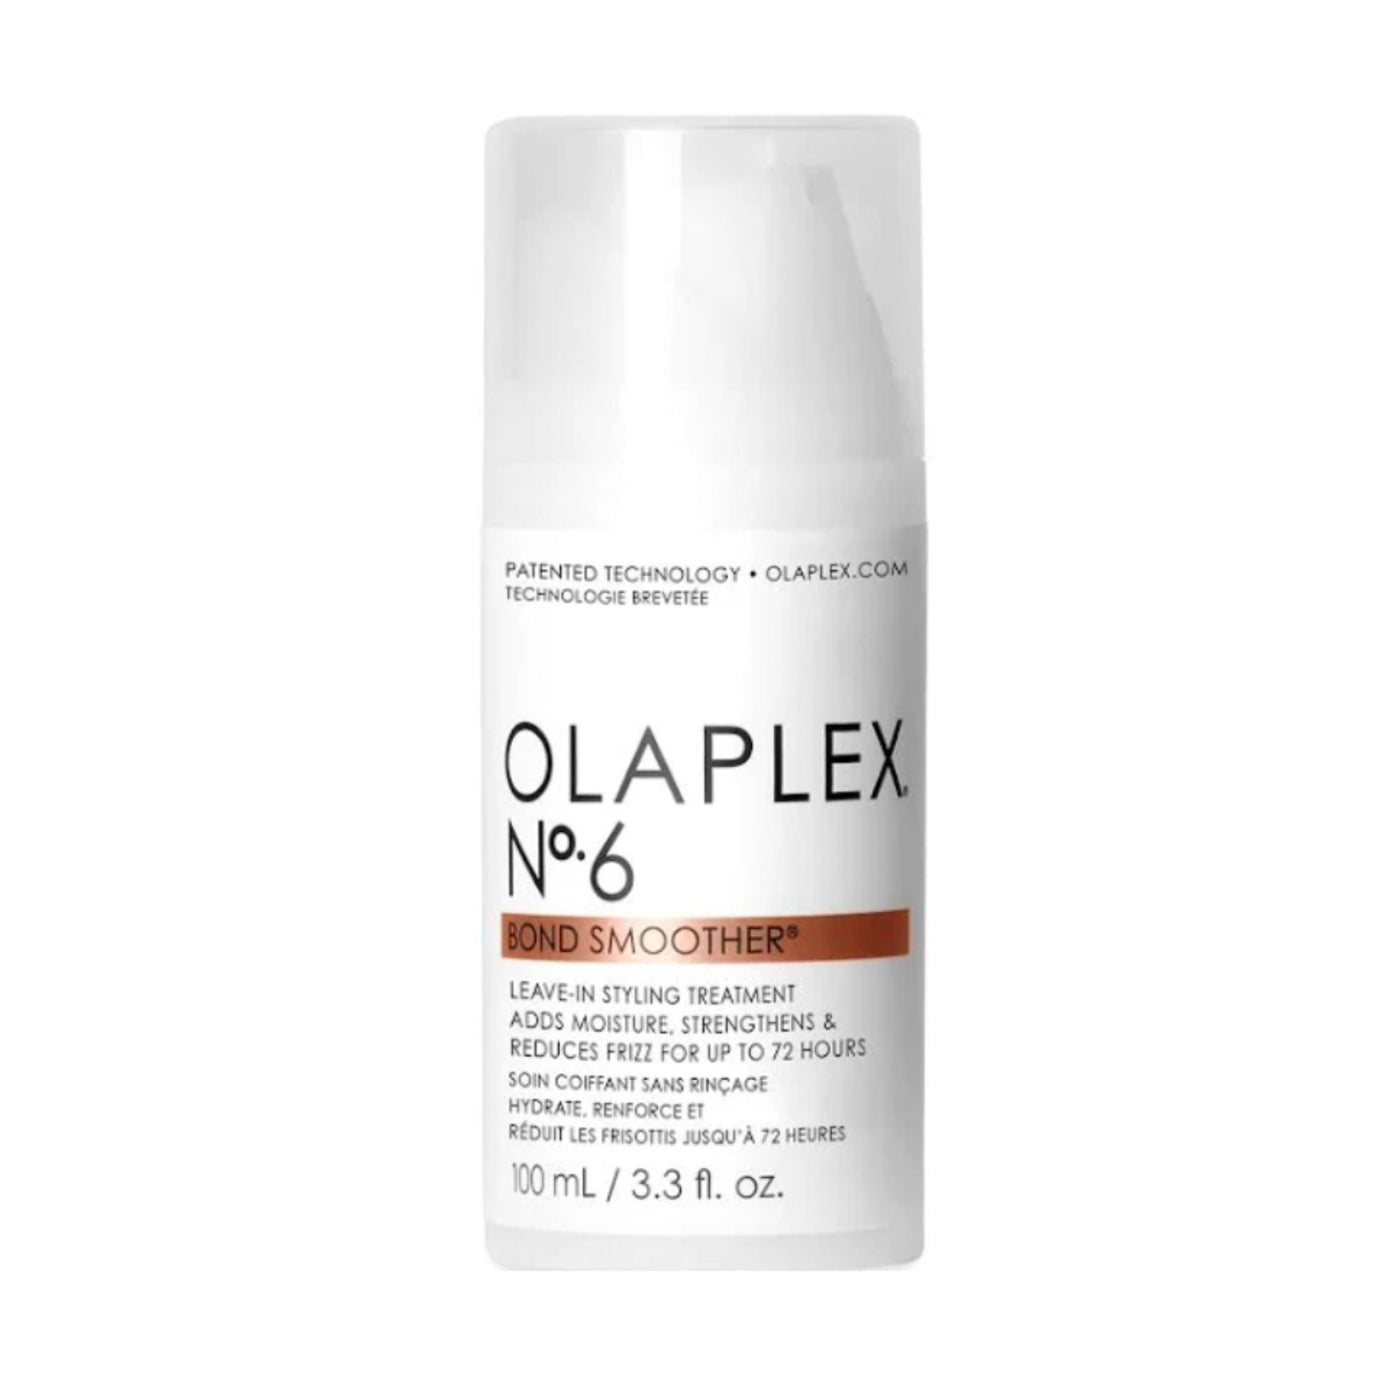 Olaplex No6 bond smoother